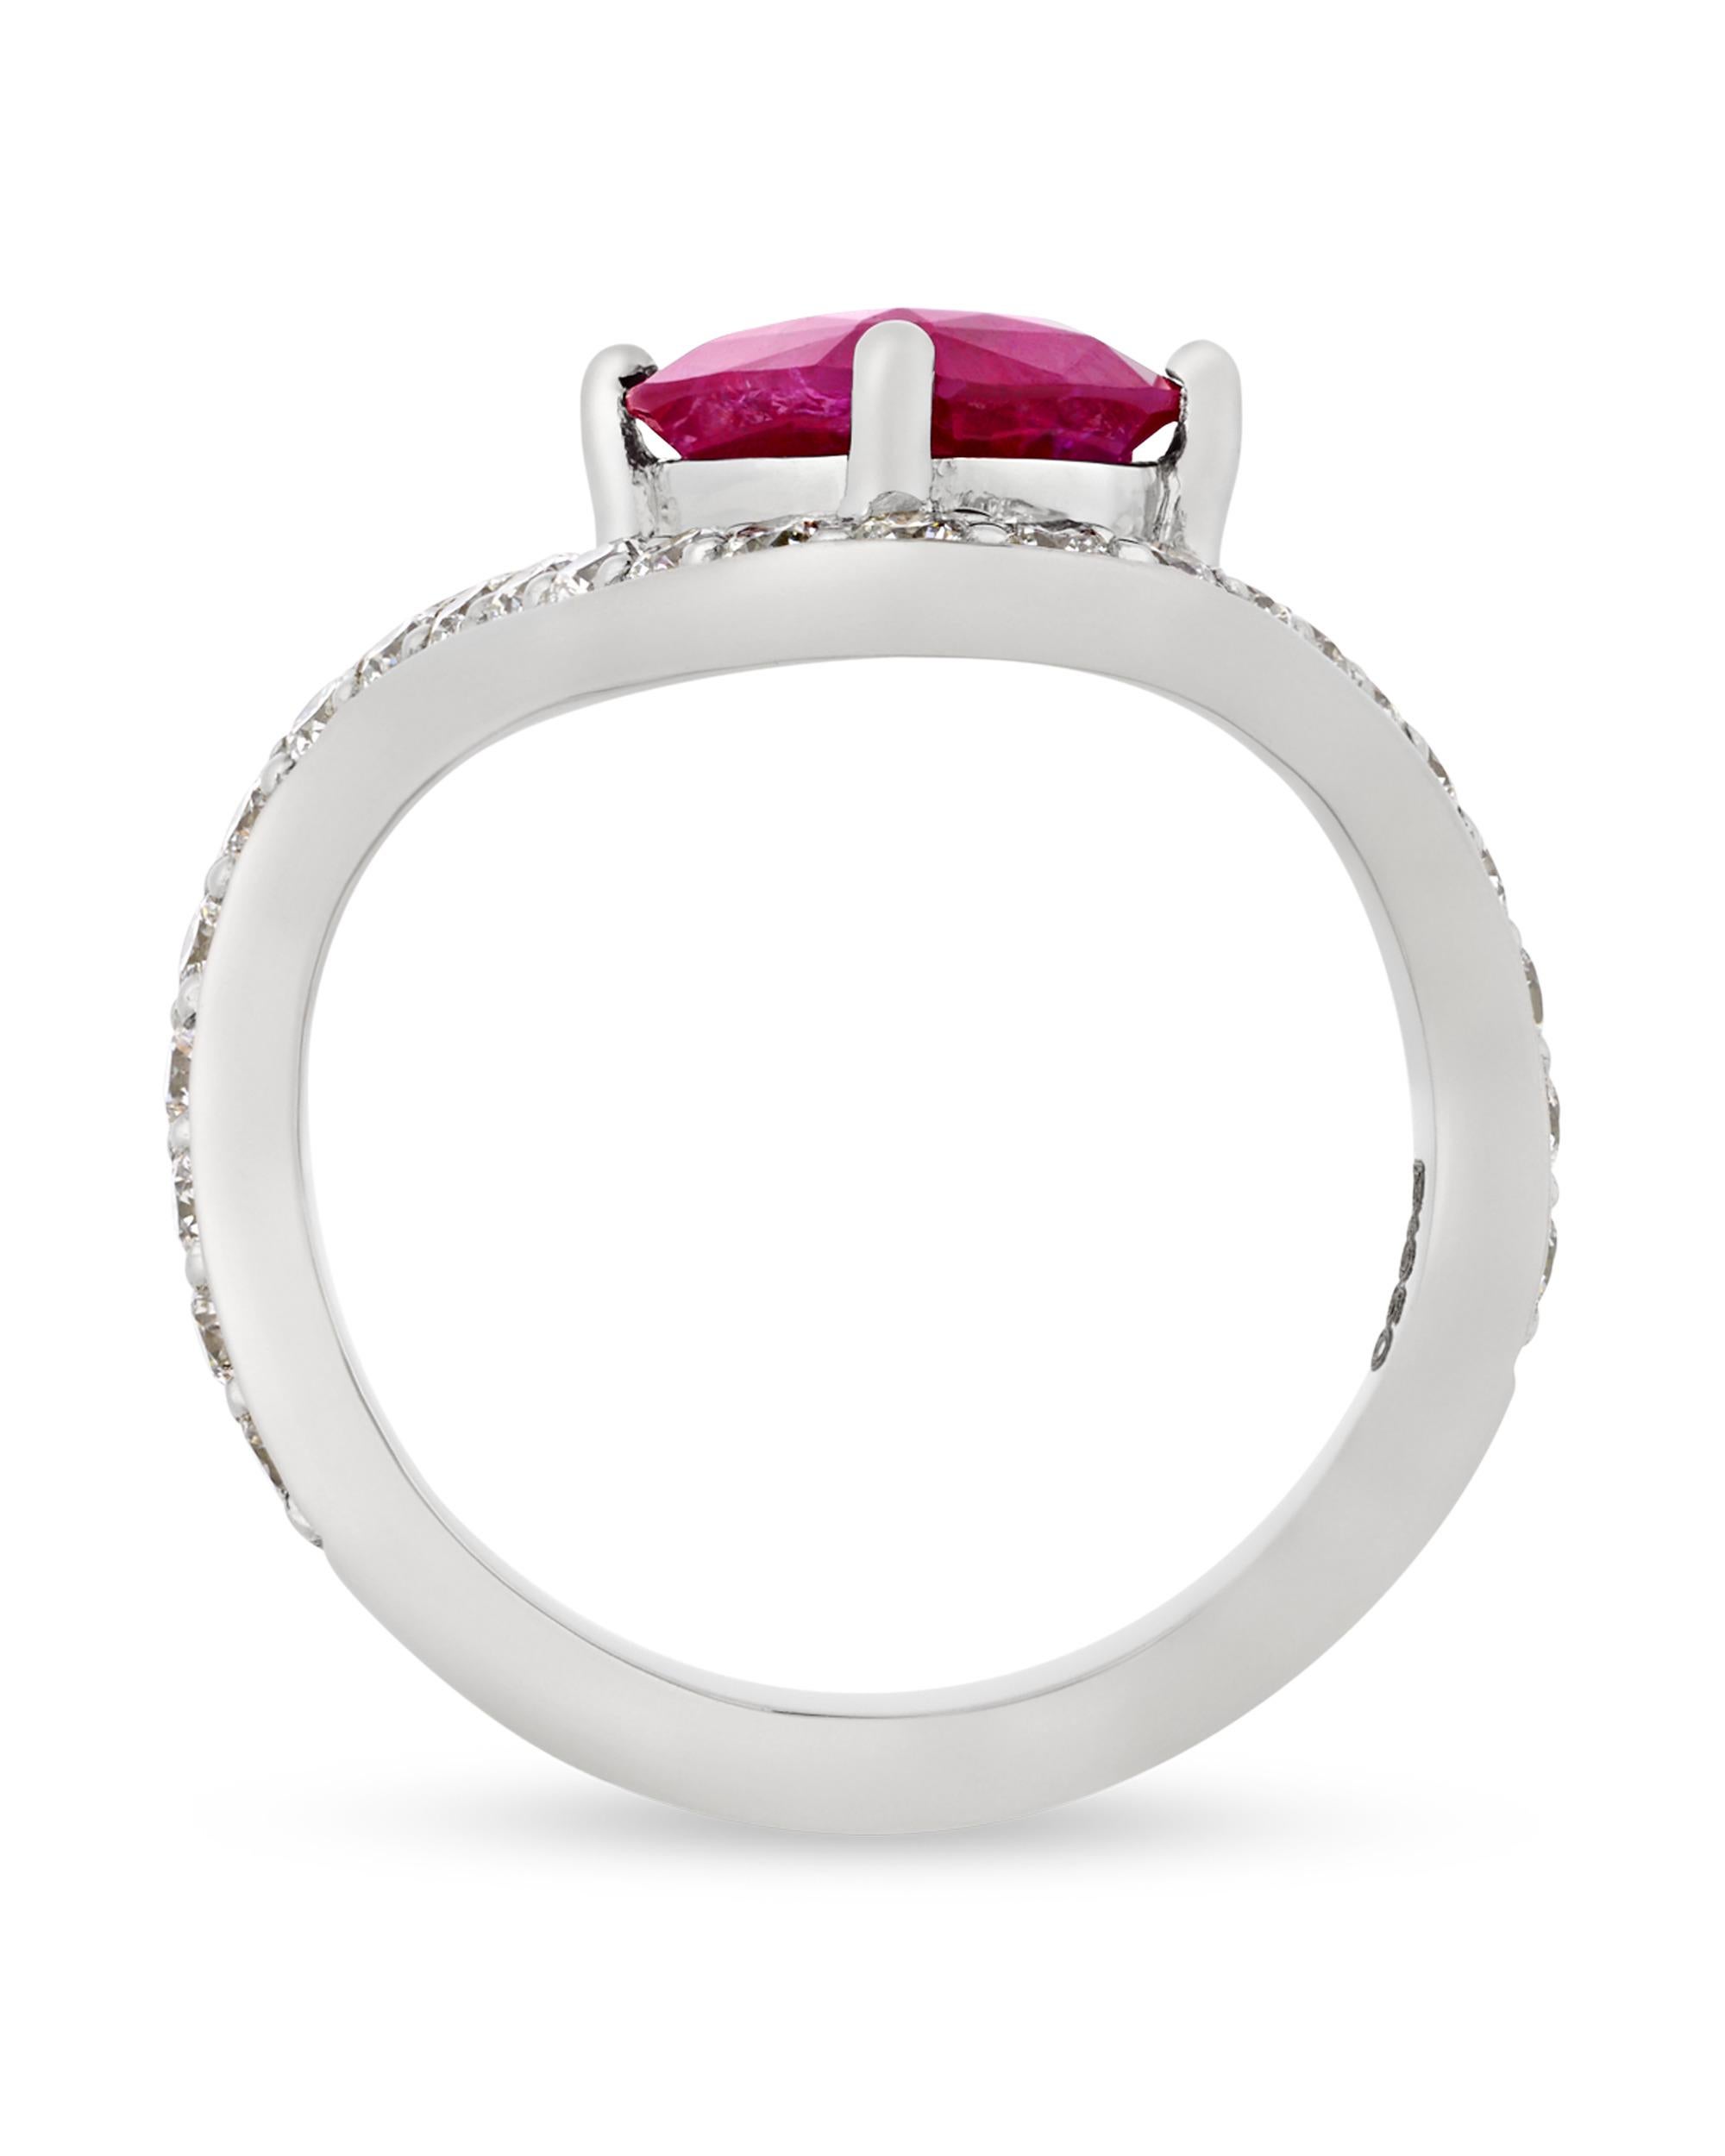 Dieser elegante Ring ist schick und schön. In der Mitte befindet sich ein exquisiter, unbehandelter Burma-Rubin. Der strahlend rote Edelstein wiegt 2,39 Karat und ist von den American Gemological Laboratories als völlig unerhitzt zertifiziert und